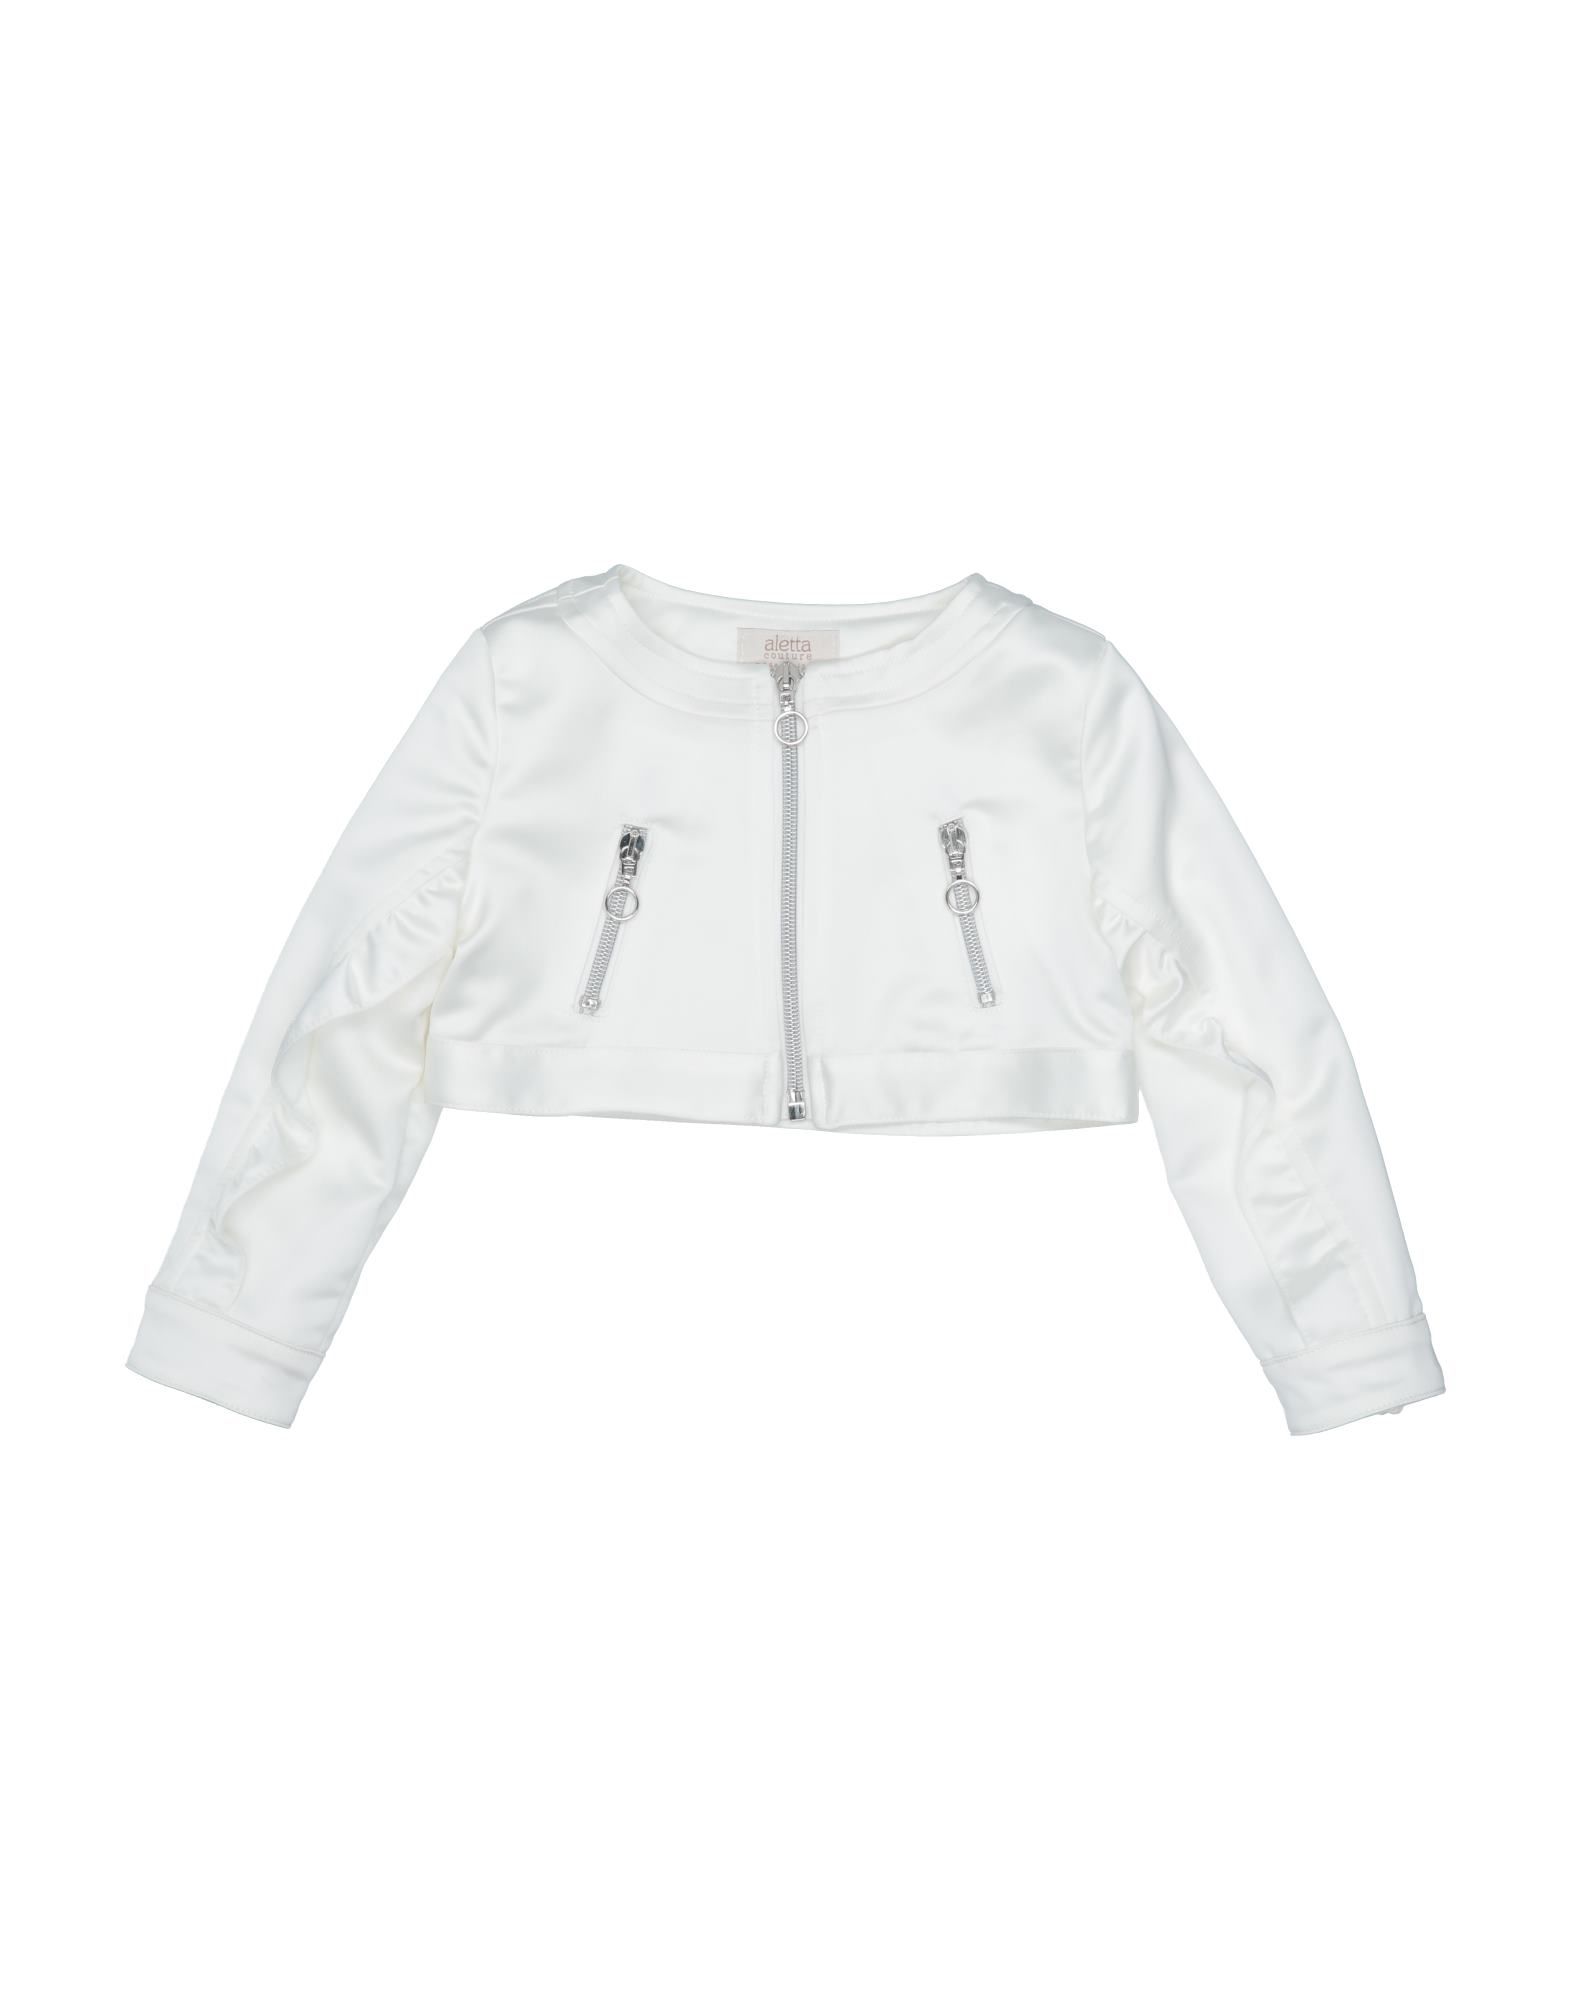 Aletta Kids' Jackets In White